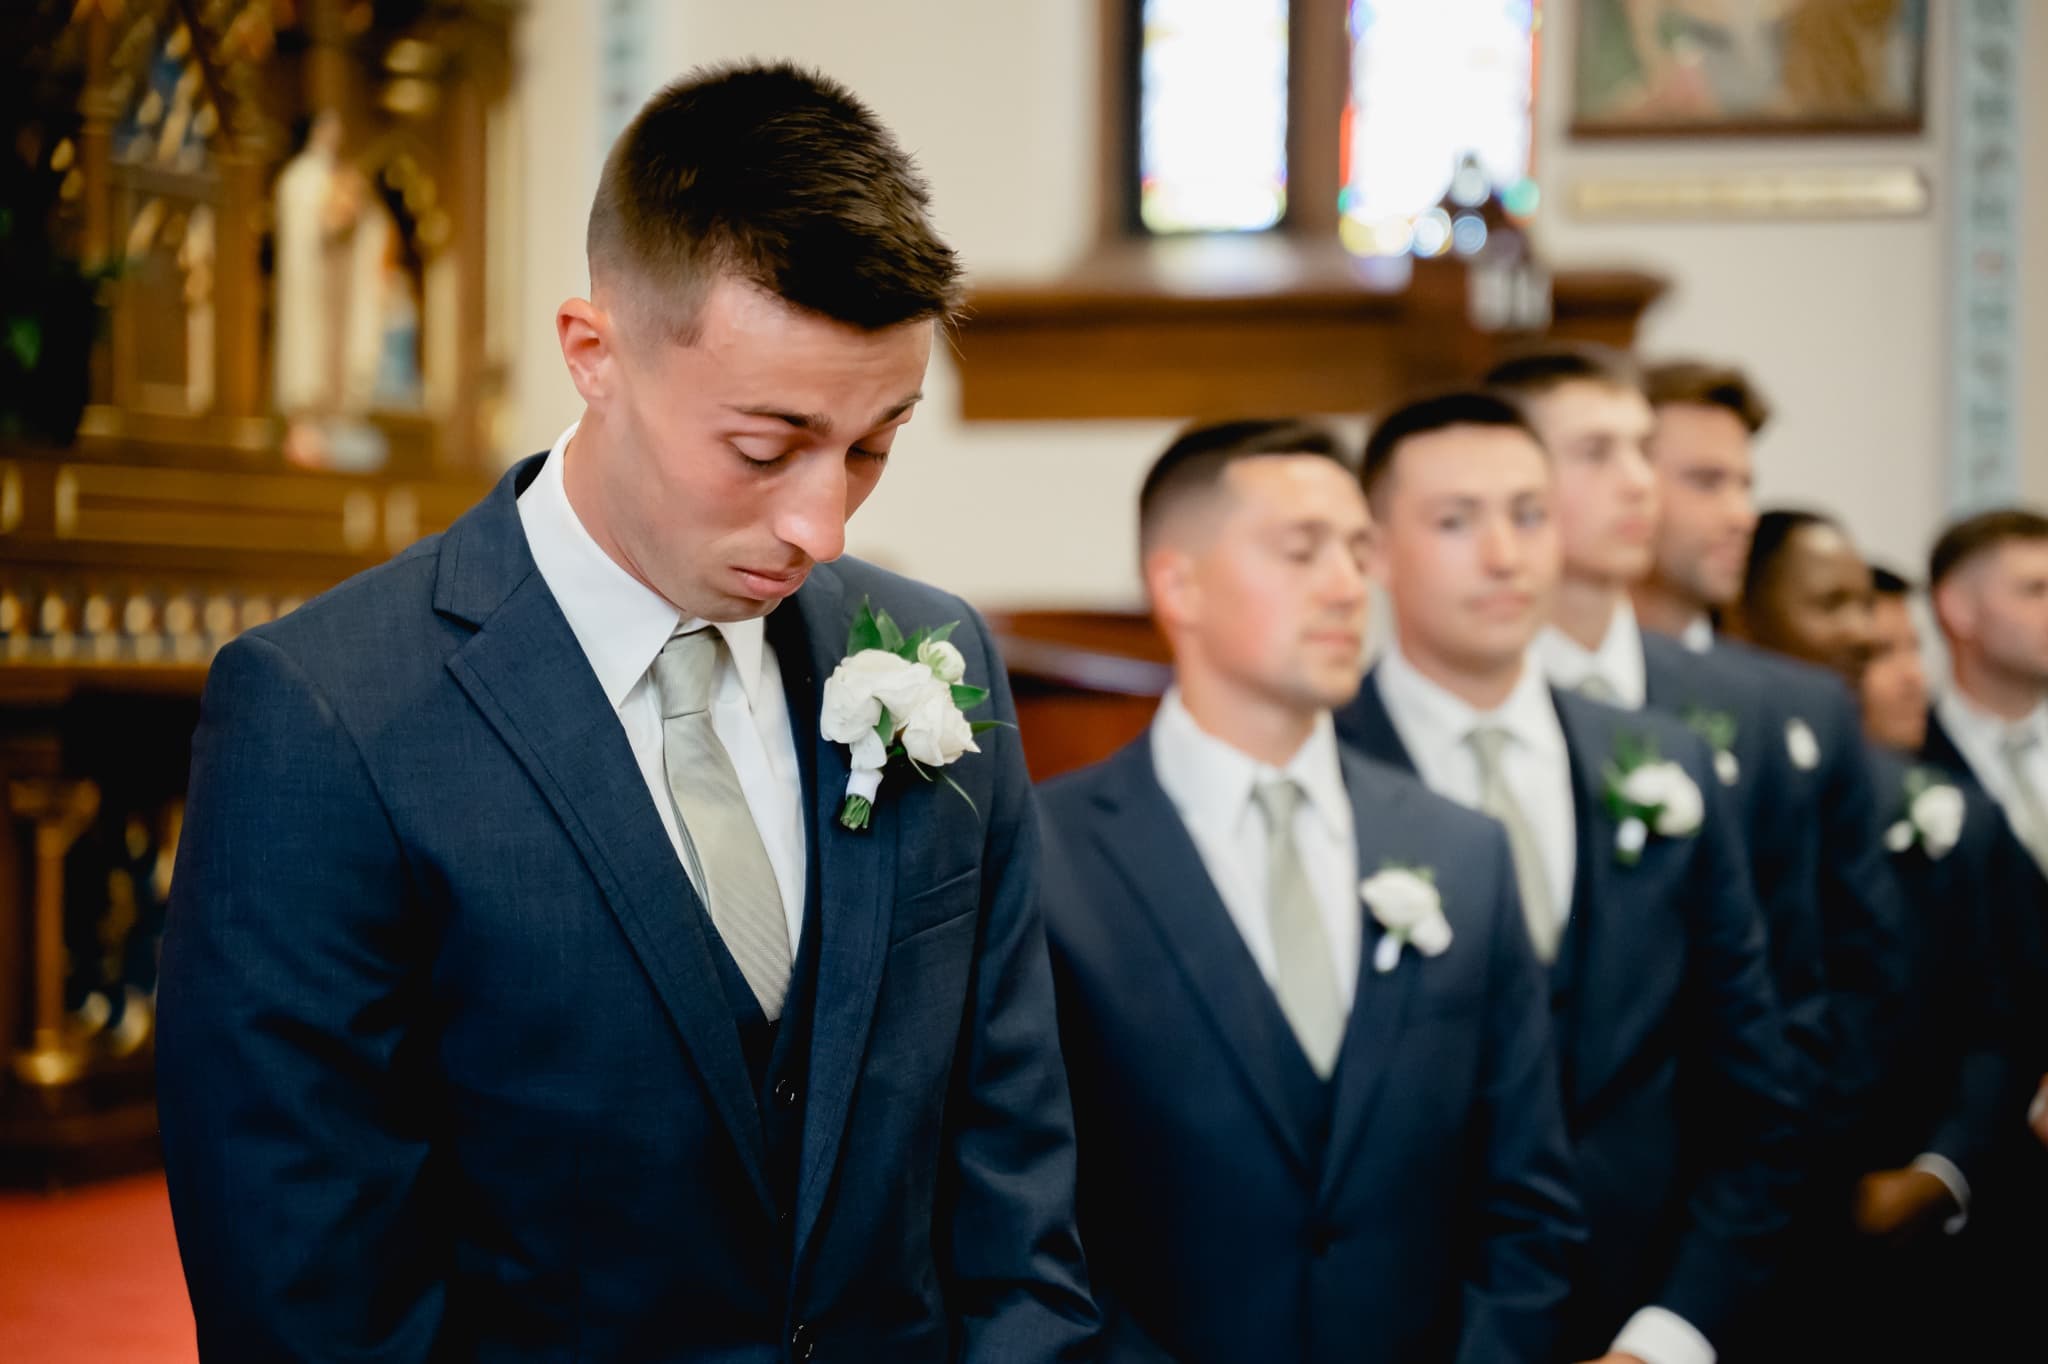 groom getting emotional as bride walks down aisle